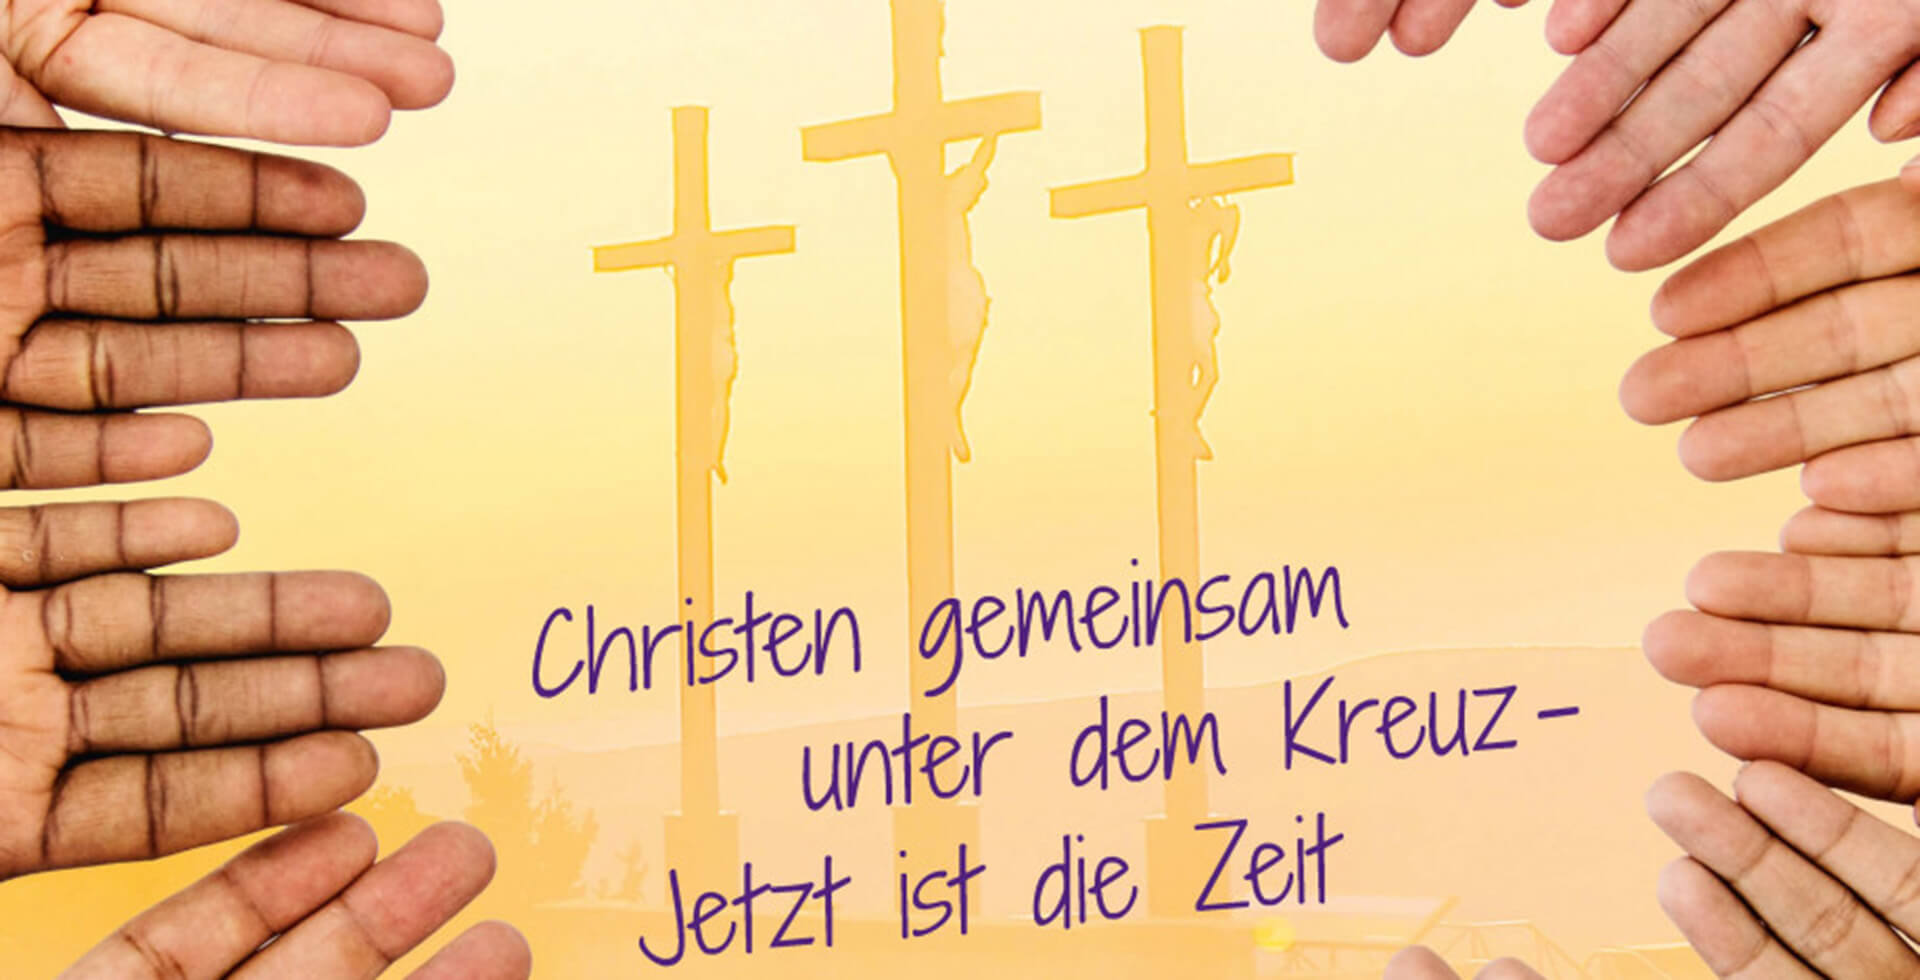 Plakat Christen gemeinsam unter dem Kreuz – Jetzt ist die Zeit“